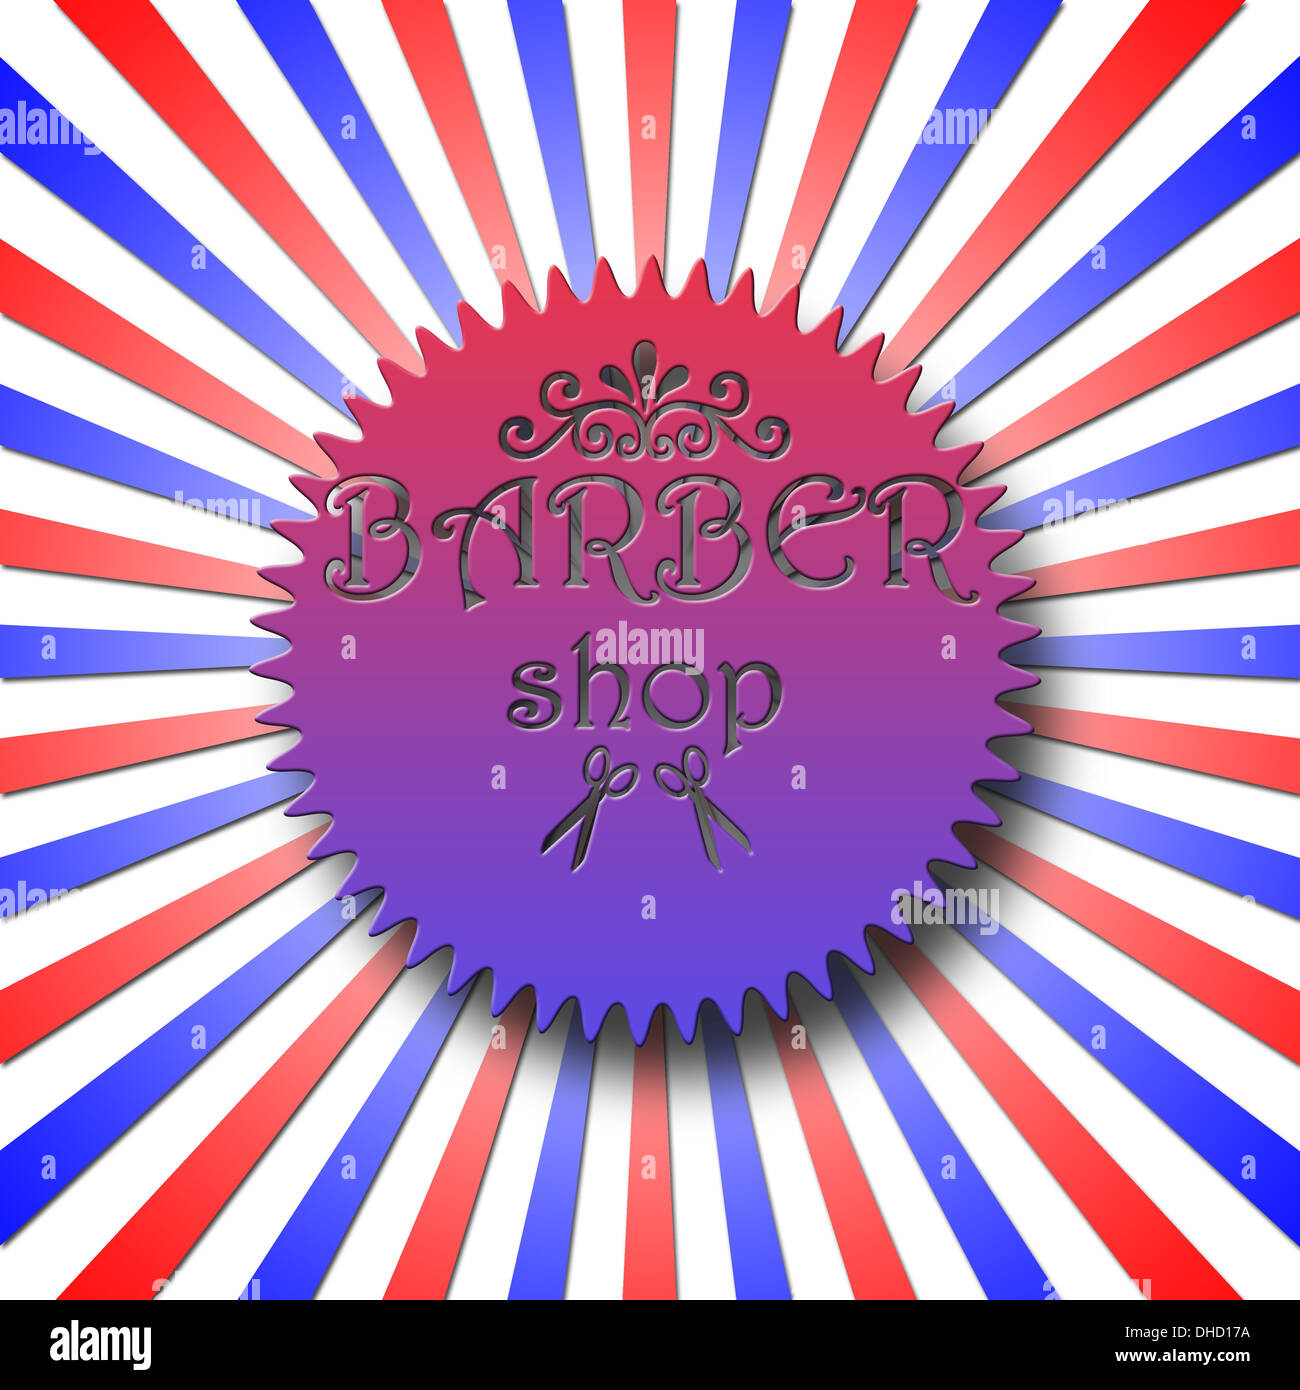 Barber Shop Abzeichen gegen Sunburst in den klassischen Farben rot, blau und weiß Stockfoto